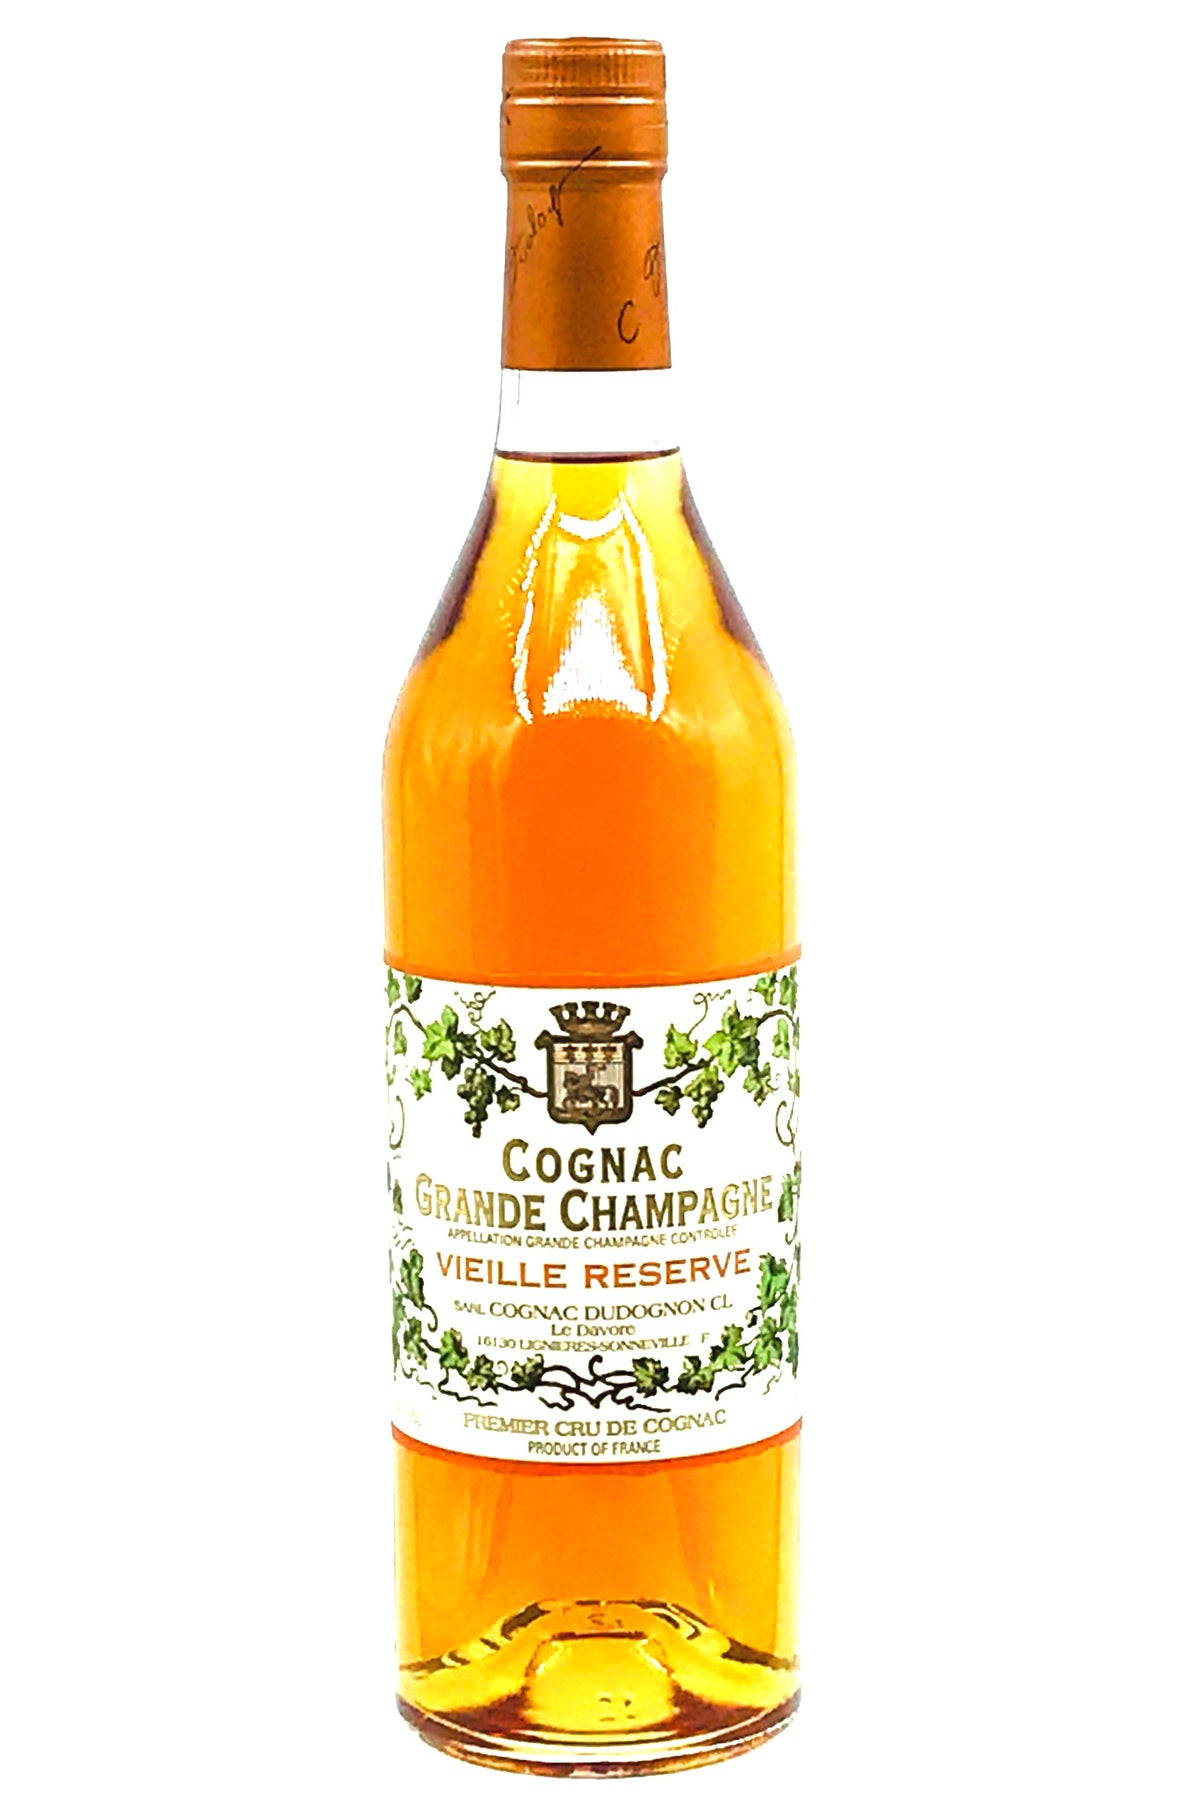 Dudognon Cognac 20 Year Cognac Grand Champagne Vieille Reserve